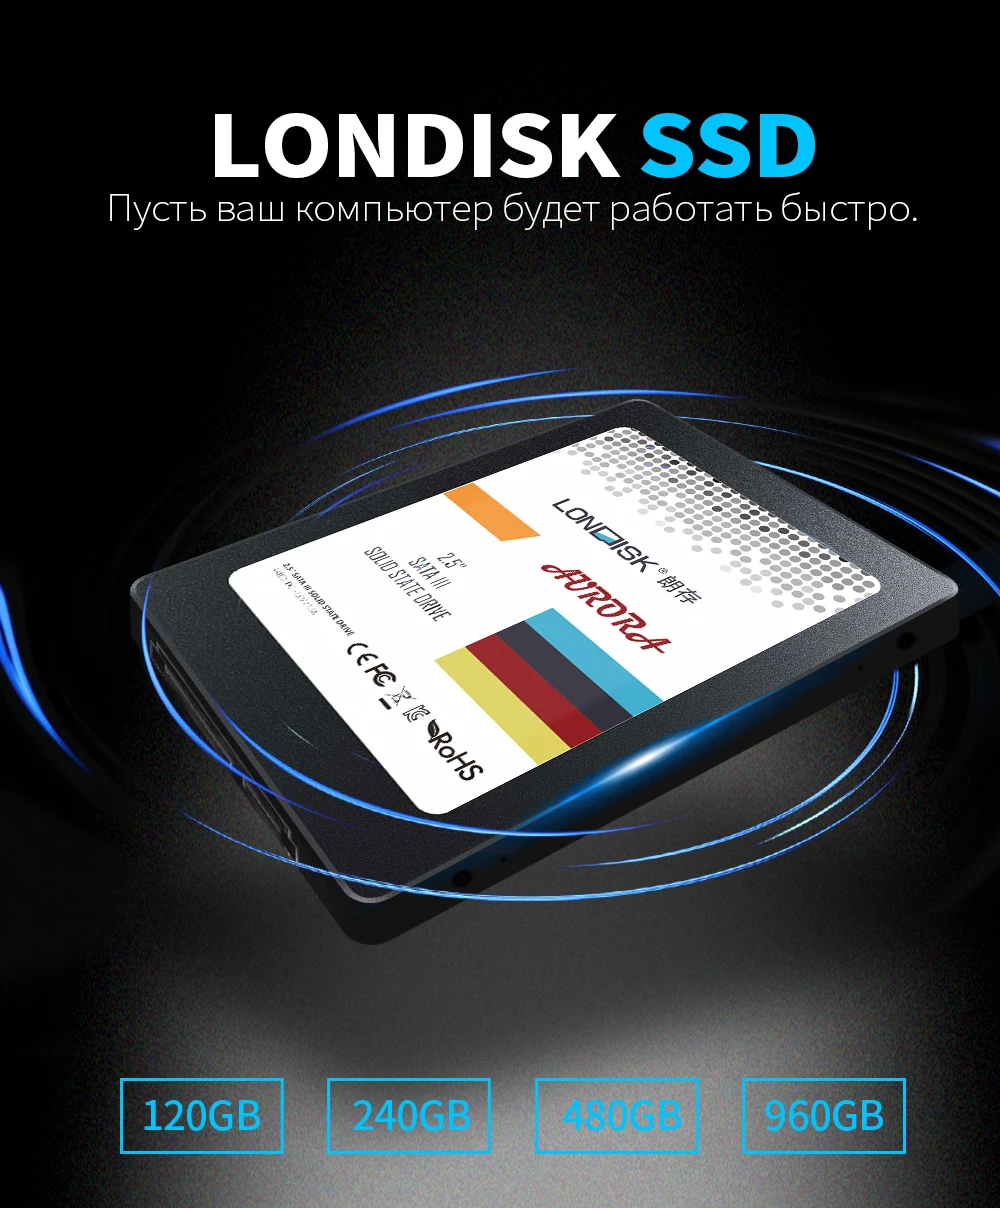 Londisk SSD 120GB 240GB Внутренний твердотельный накопитель HDD 480GB 960GB SATA3 2,5-дюймовый жесткий диск SSD для ноутбука для настольных ПК